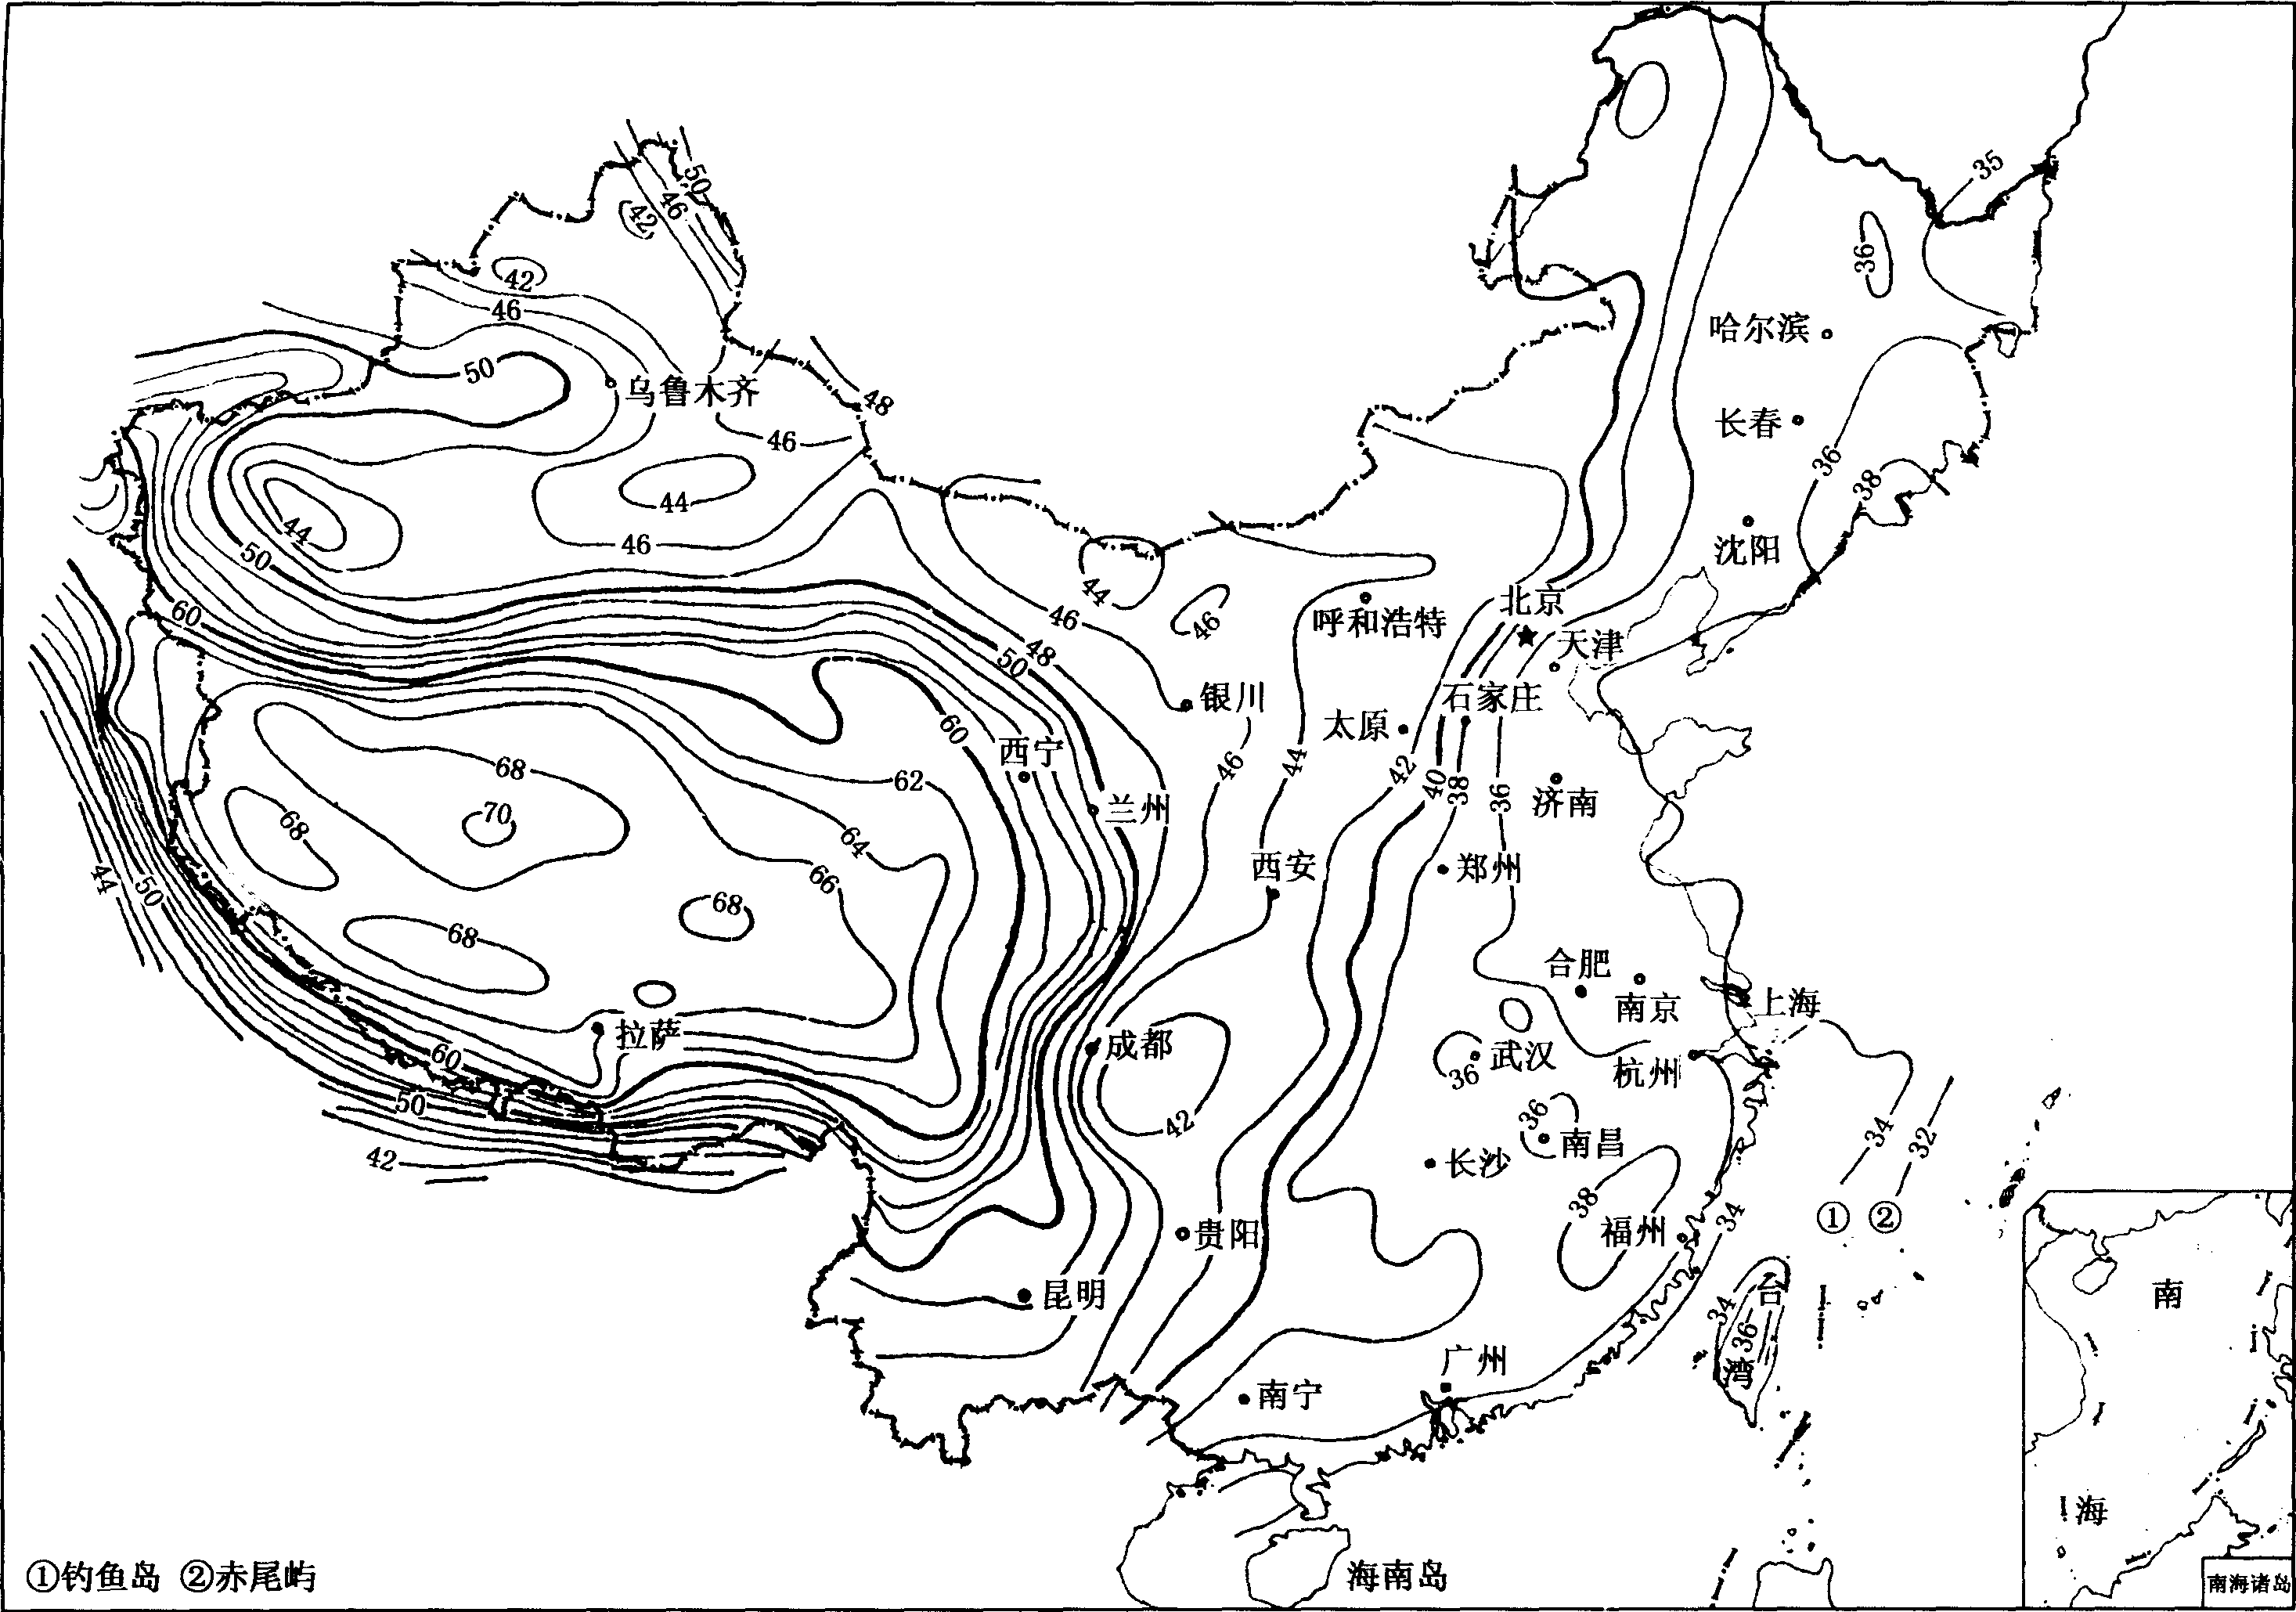 图1—8 中国莫霍面深度(km)